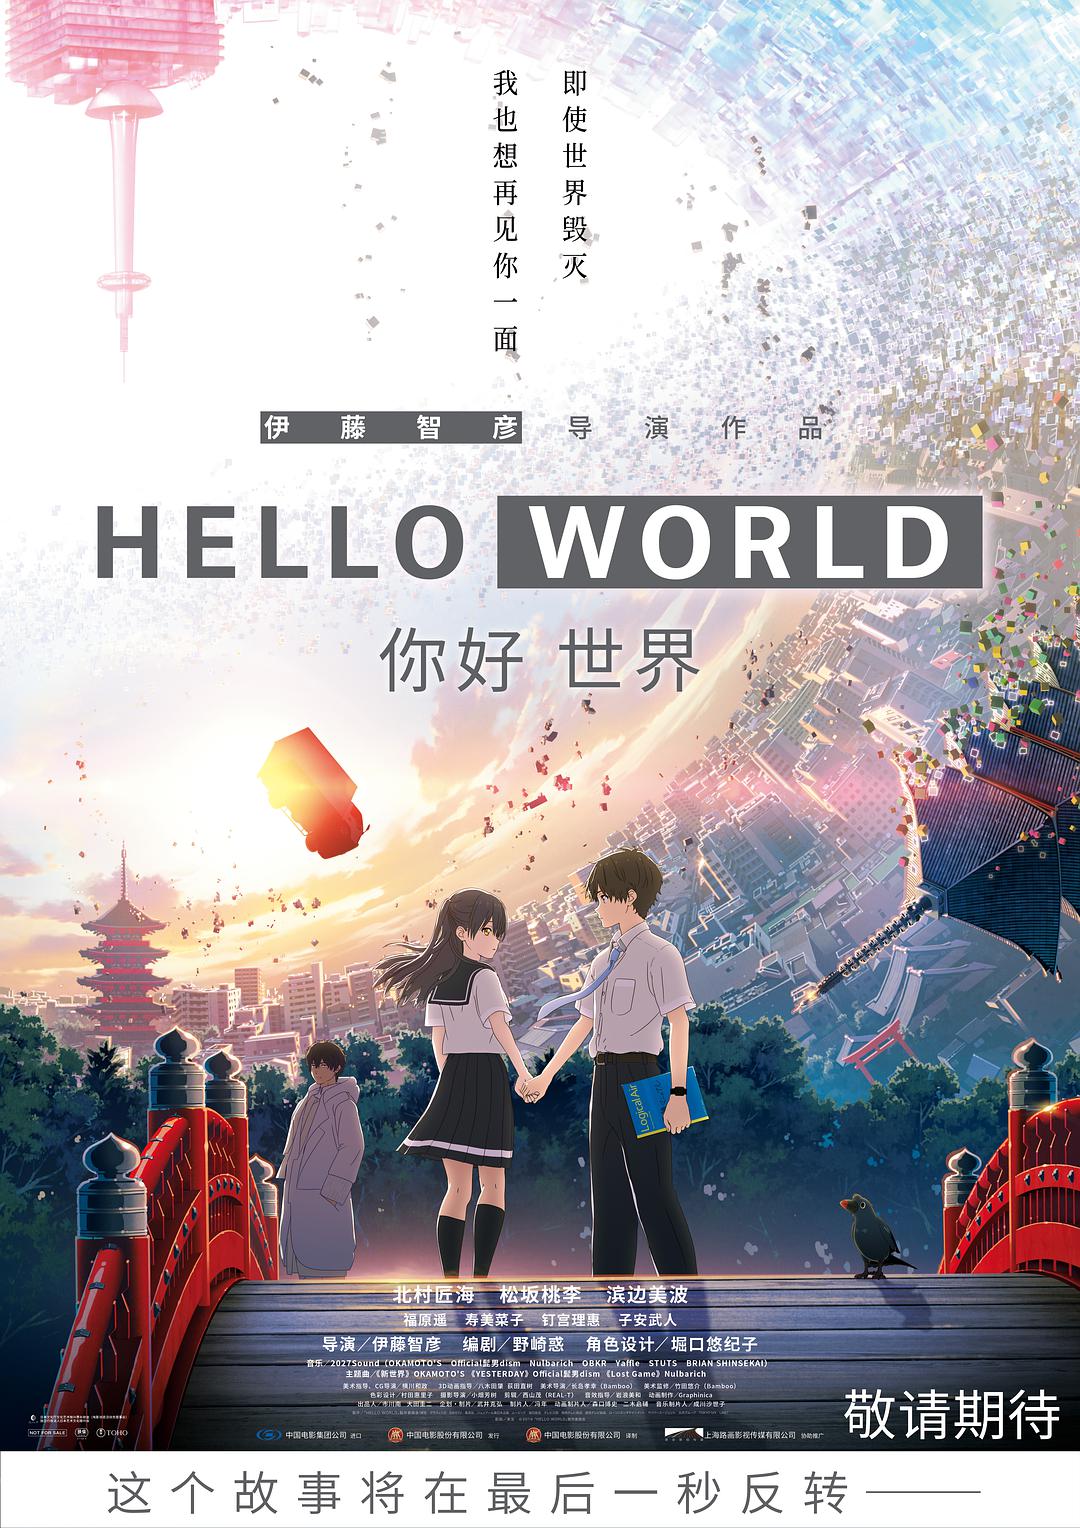 [你好世界][DiY简繁字幕/官方字幕] Hello World 2019 1080p JPN BluRay AVC Atmos TrueHD 7.1-DiY@HDHome[38.06GB]-1.jpg